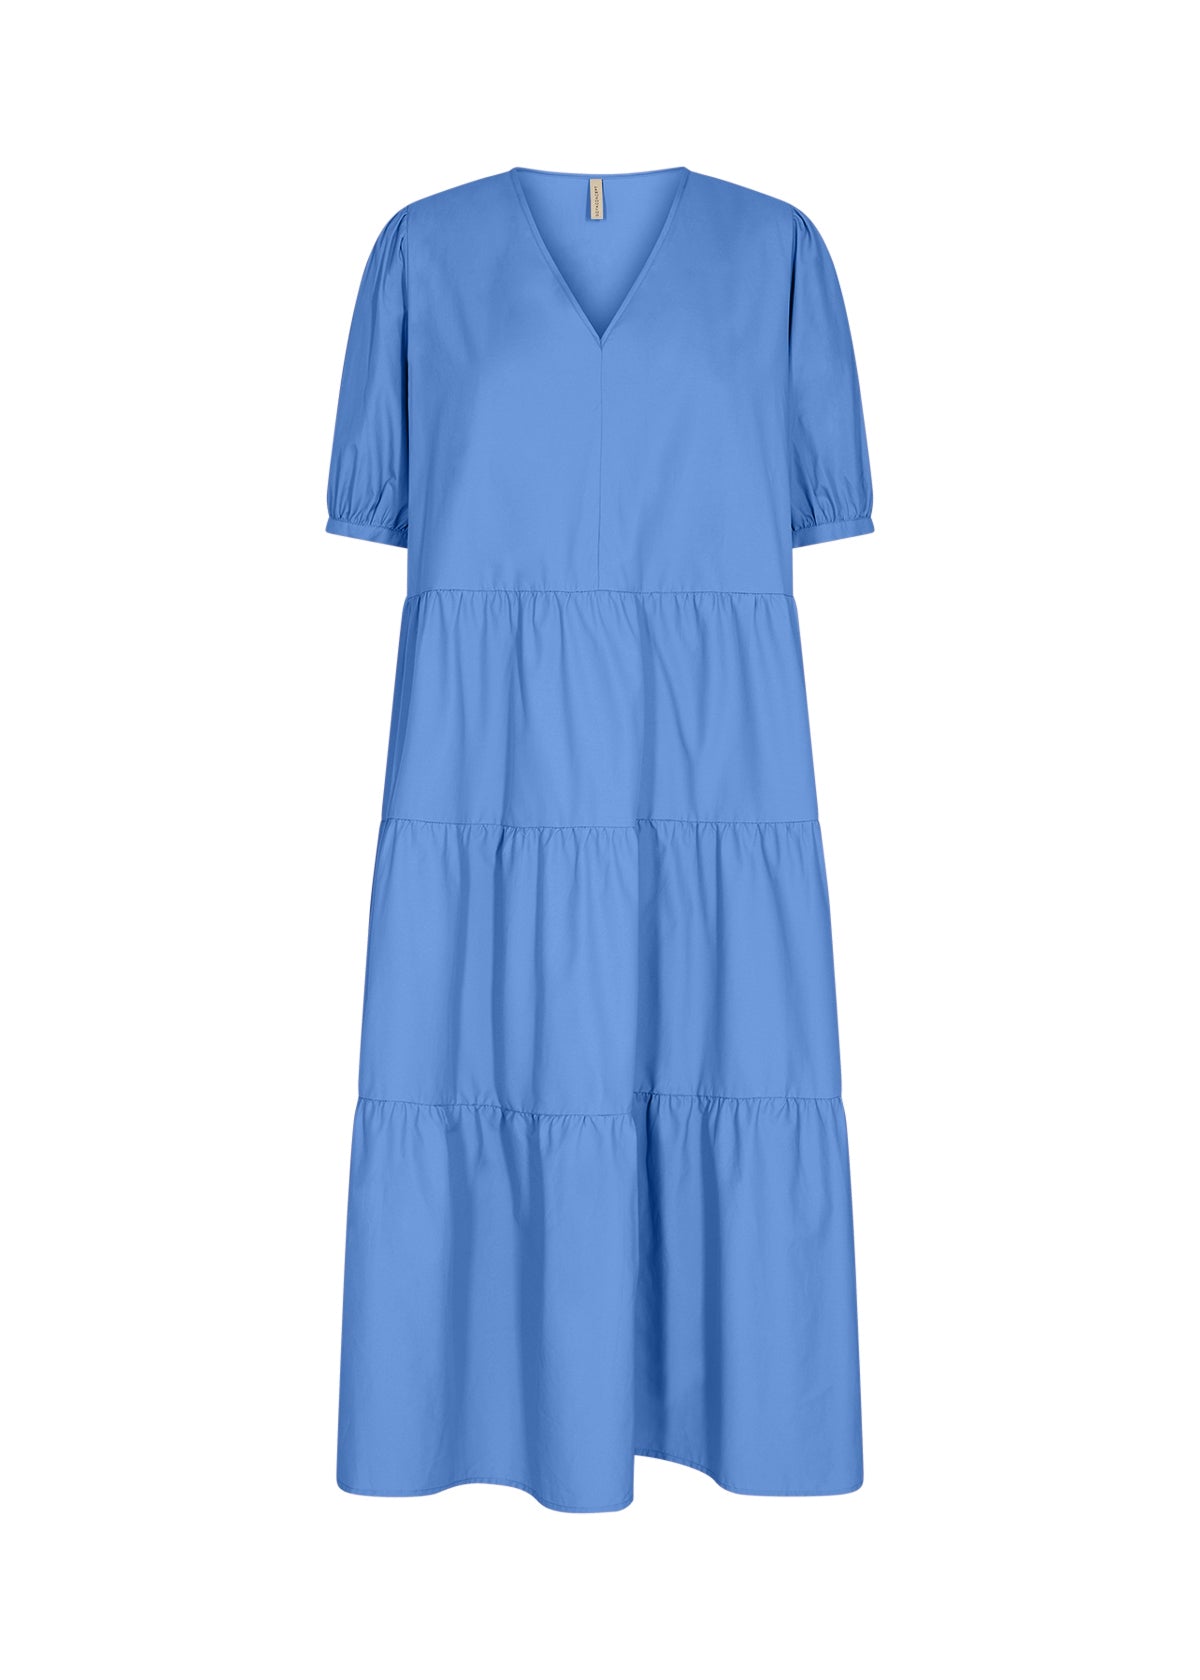 NETTI Dress Bright Blue